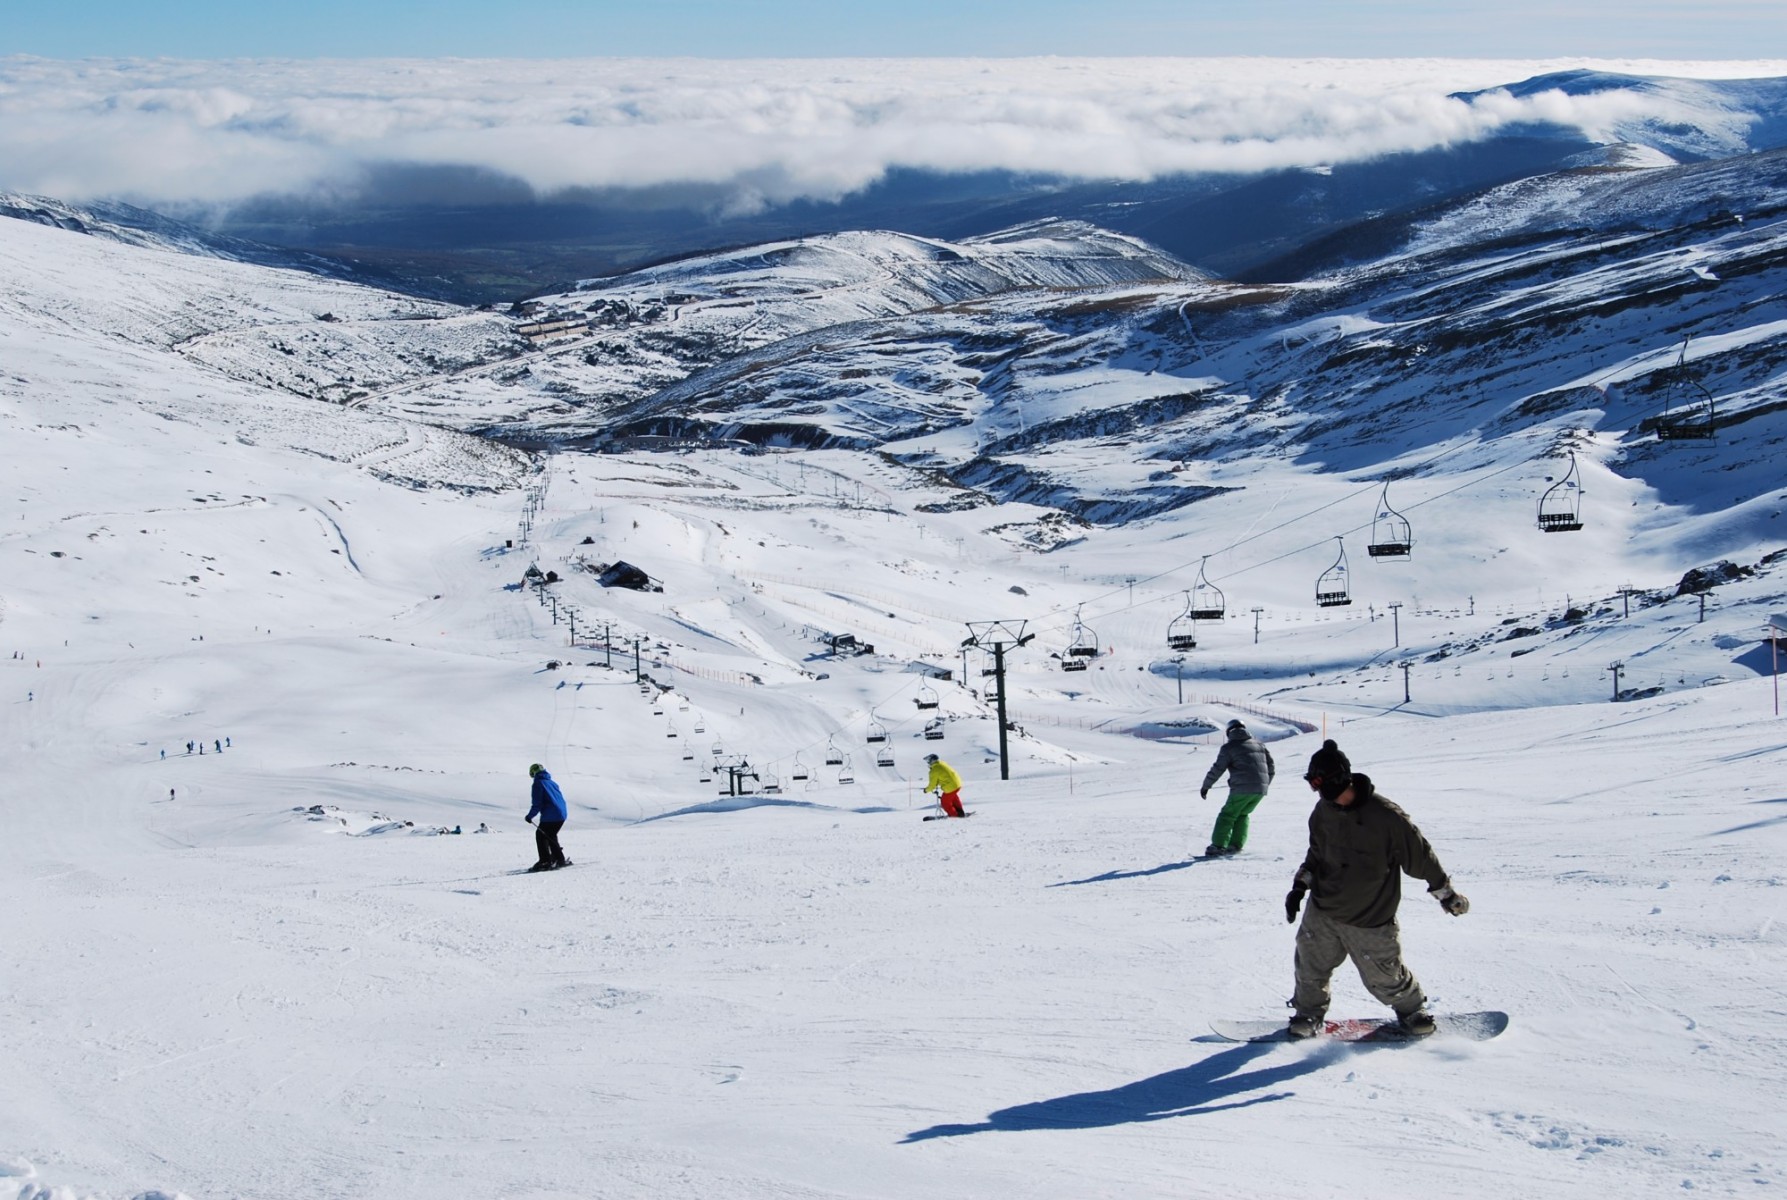 «Como ha hecho muy malo en Navidad no podemos cuantificar si las restricciones ha reducido el alquiler de esquís»